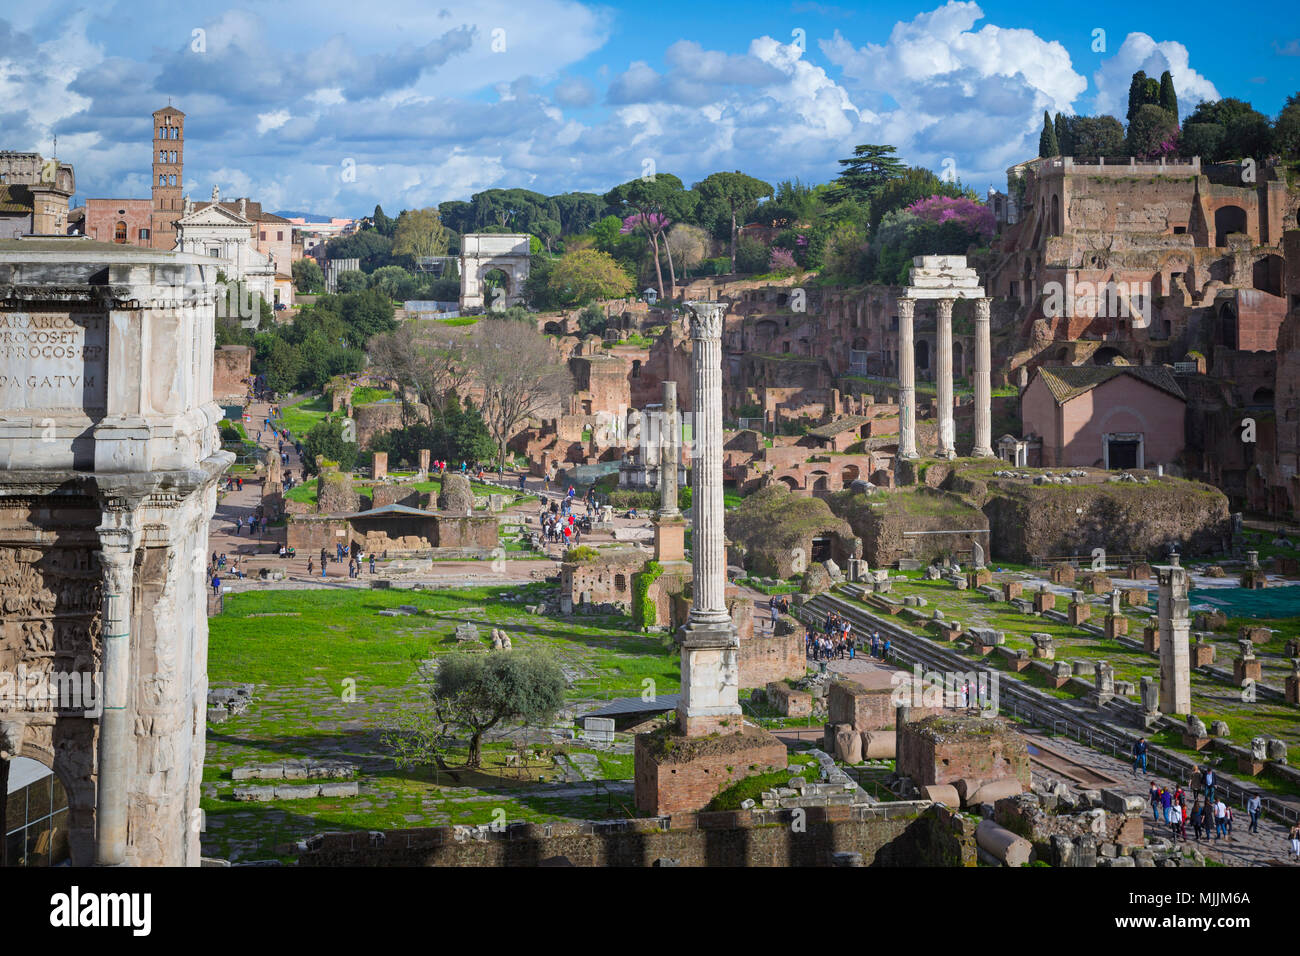 Roma, Italia. Vista complessiva del Foro Romano. Il Forum è una parte del centro storico di Roma che è un sito Patrimonio Mondiale dell'UNESCO. Foto Stock